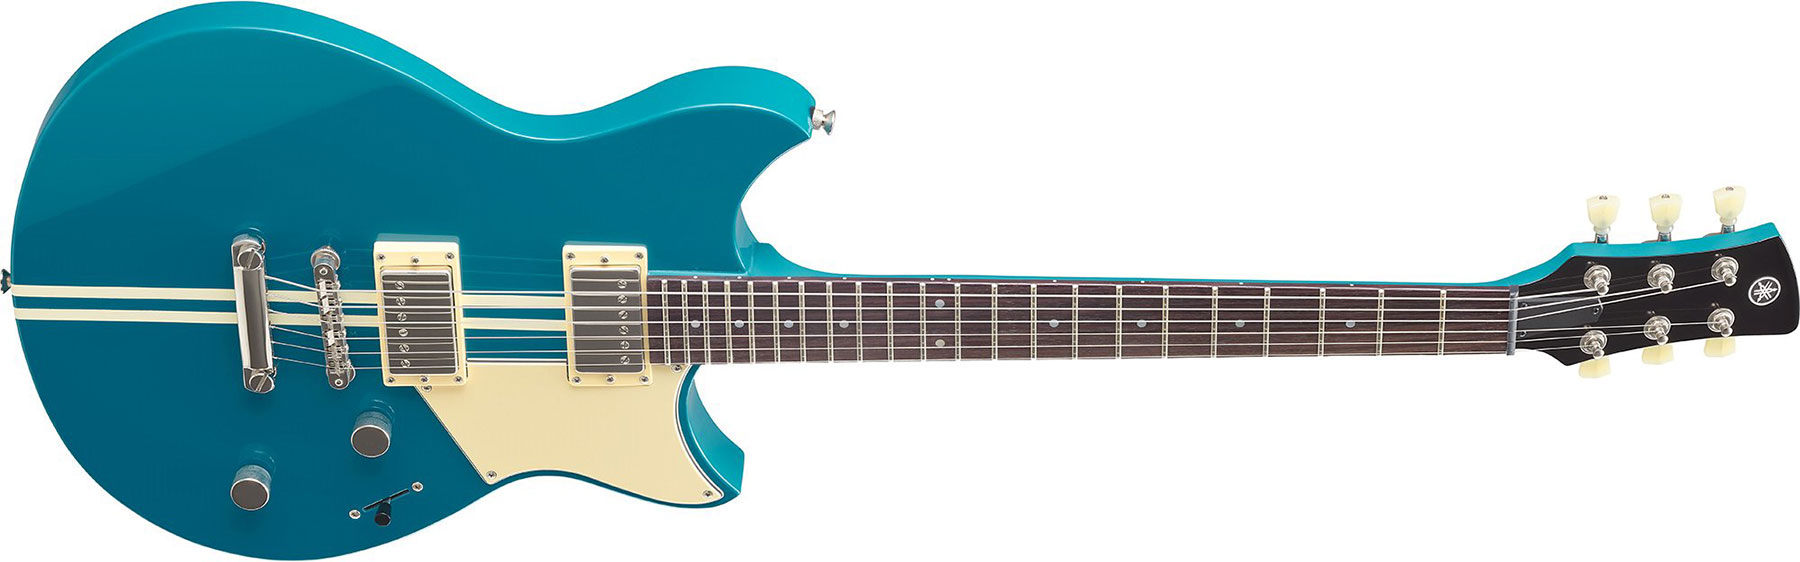 Yamaha Rse20 Revstar Element Hh Ht Rw - Swift Blue - Guitarra eléctrica de doble corte. - Variation 1